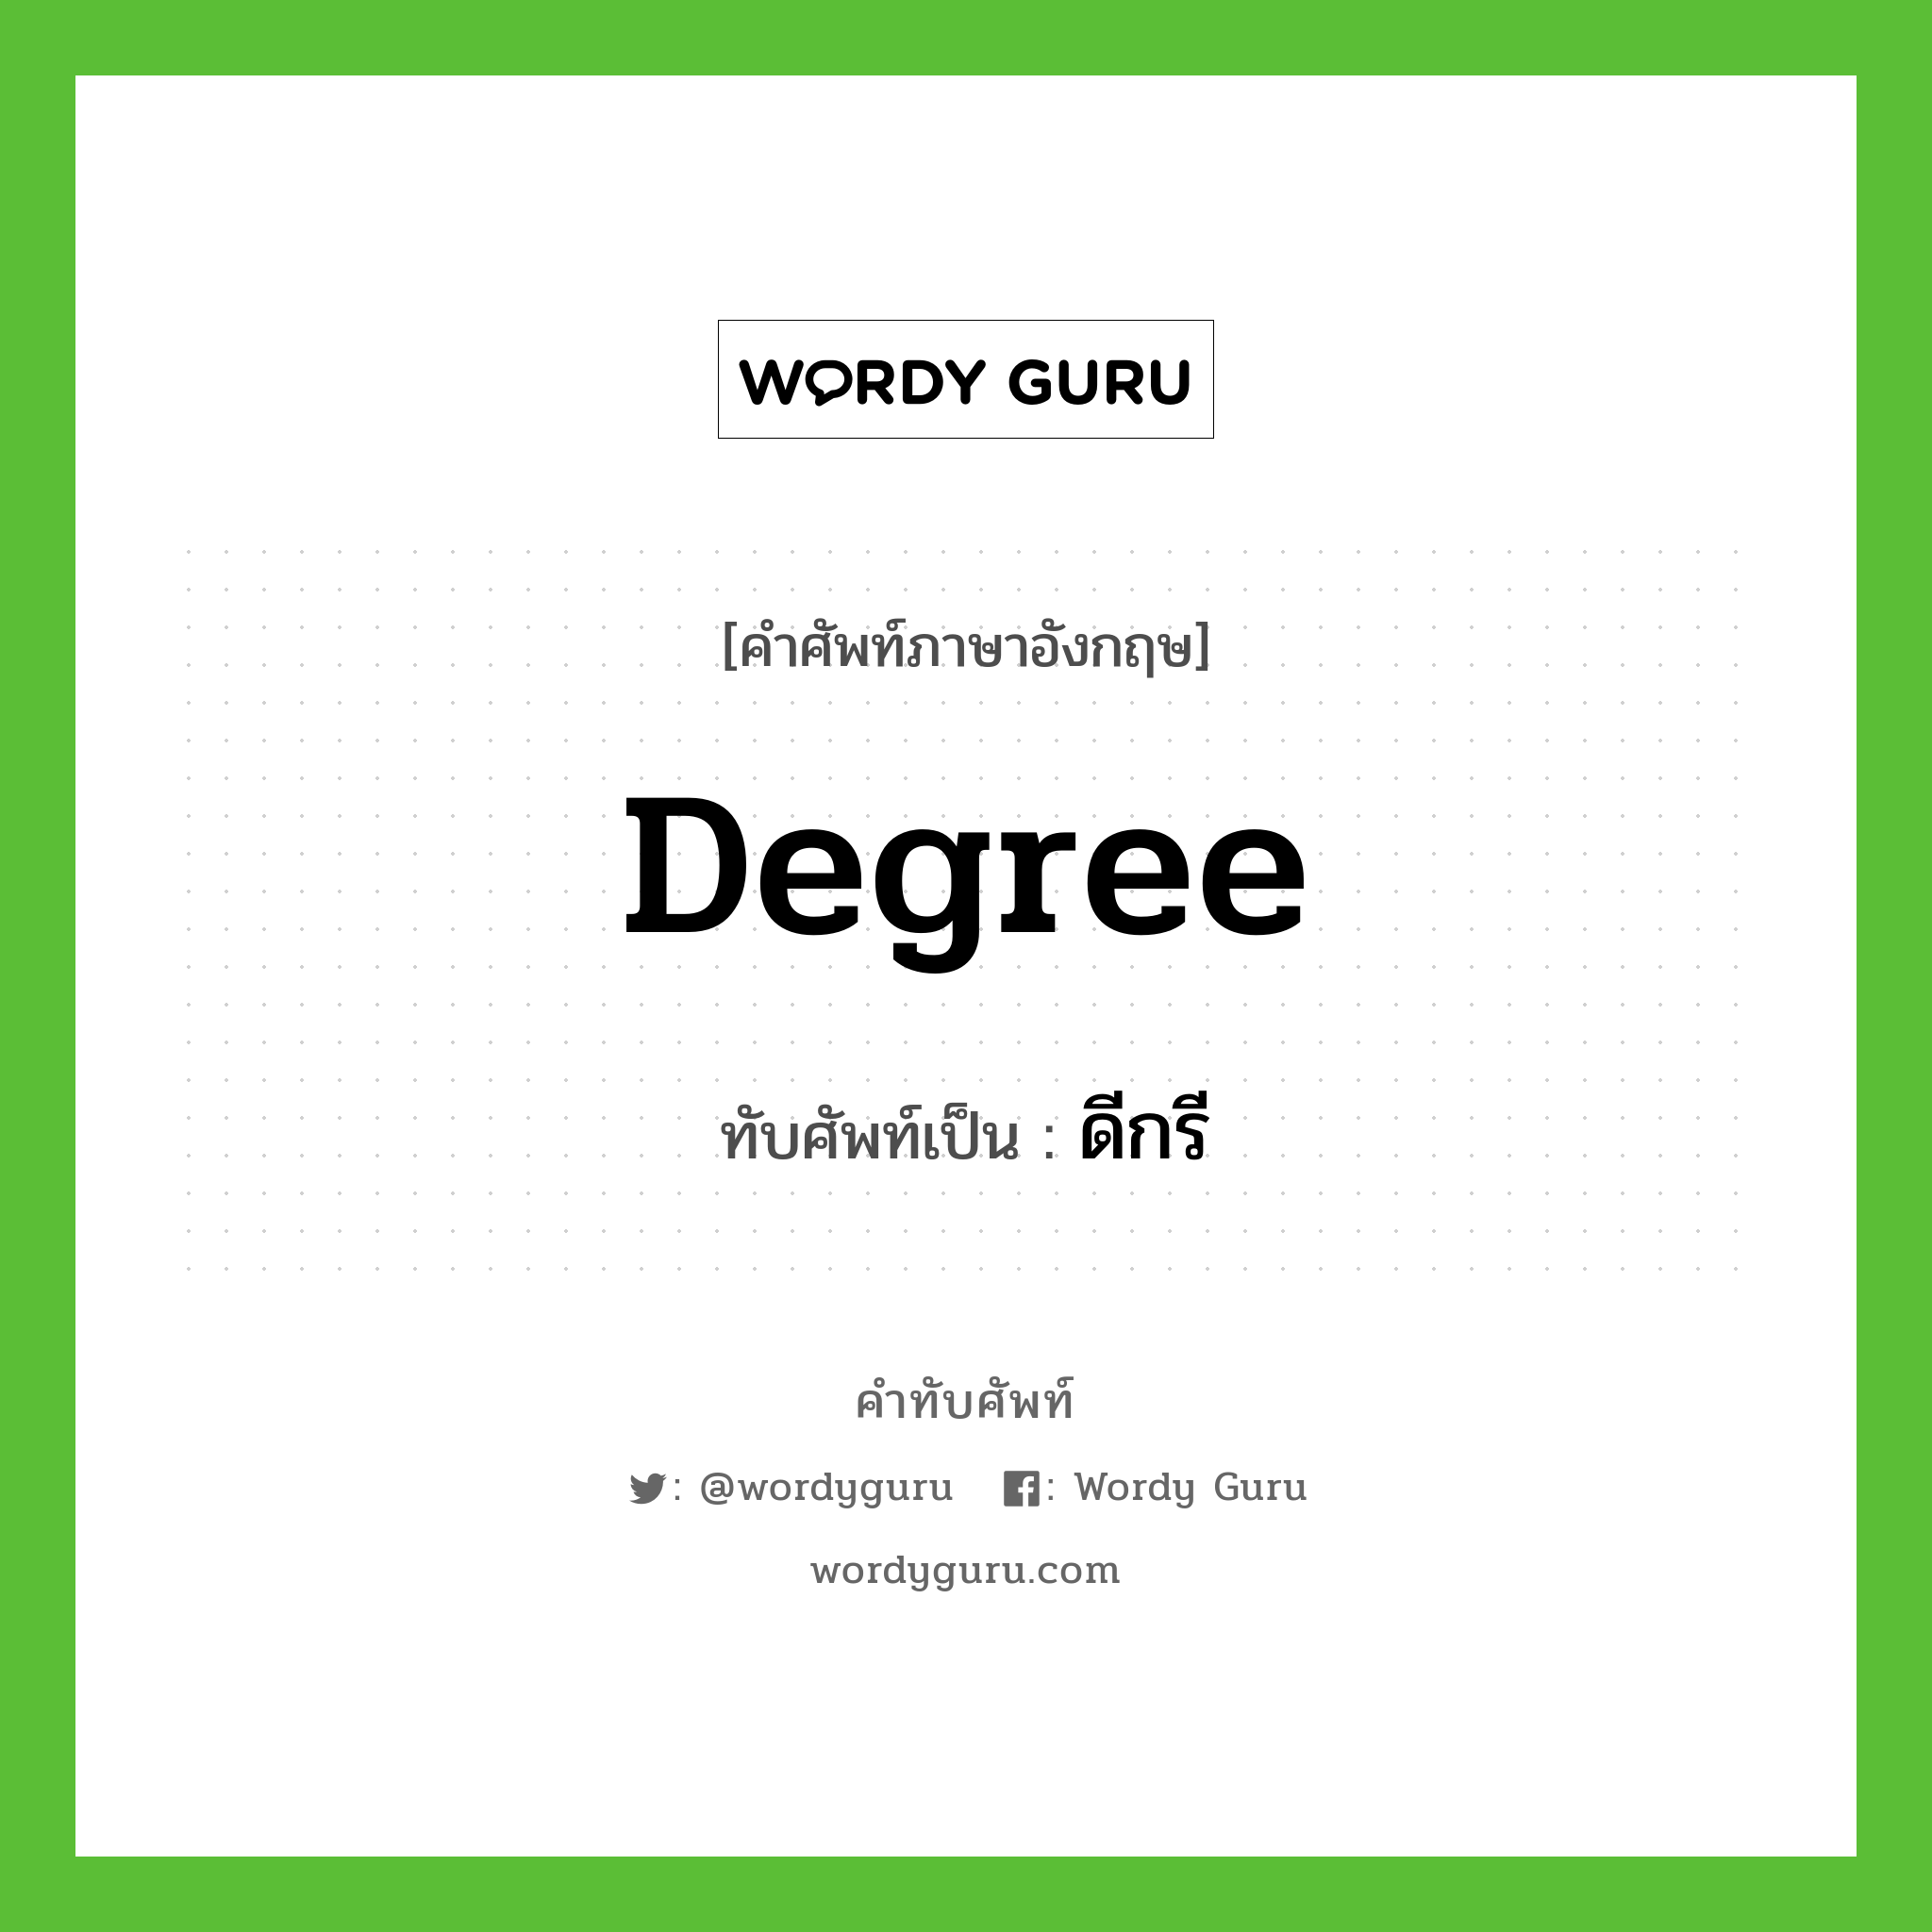 degree เขียนเป็นคำไทยว่าอะไร?, คำศัพท์ภาษาอังกฤษ degree ทับศัพท์เป็น ดีกรี